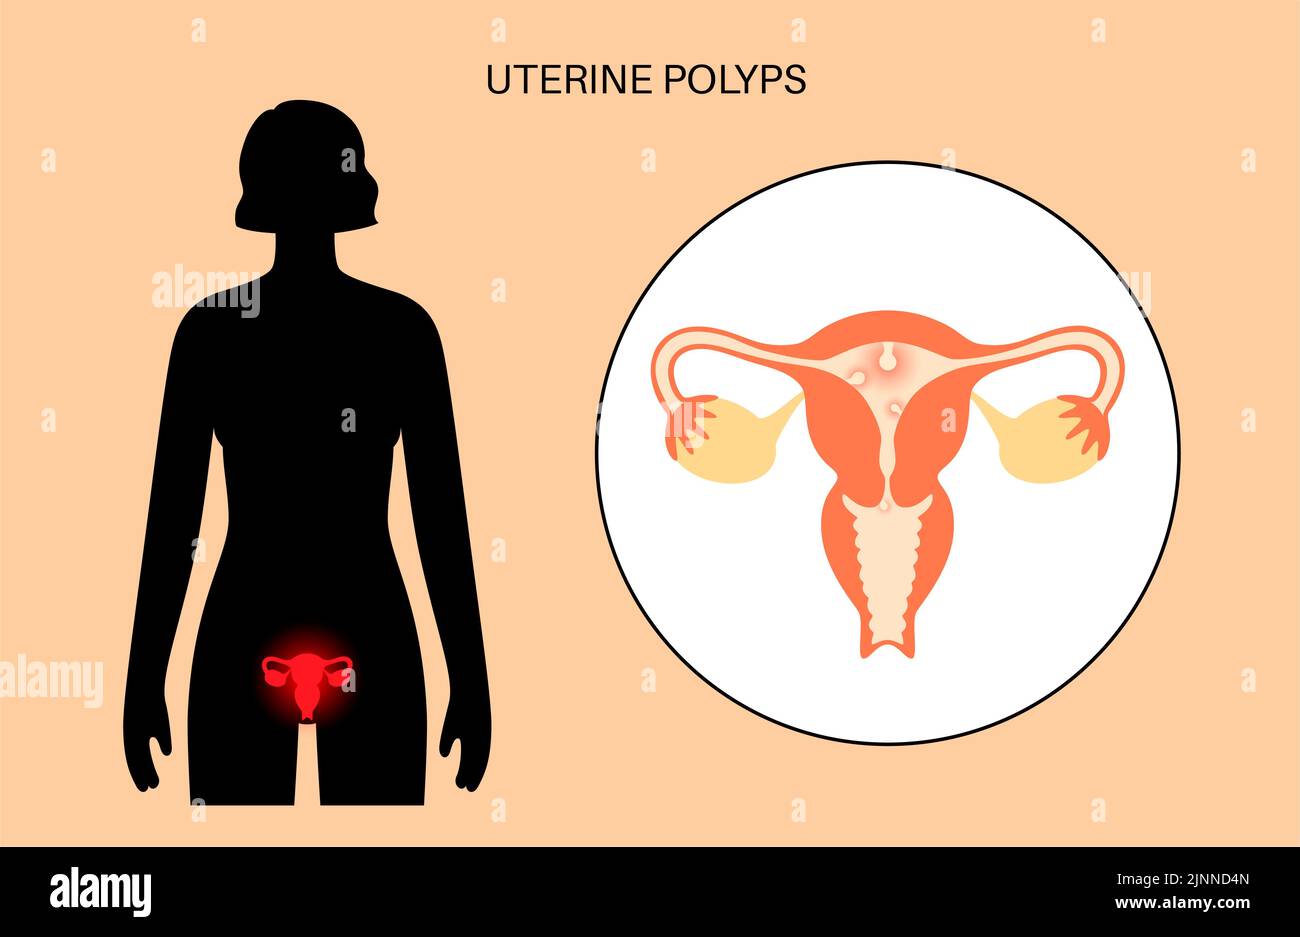 Pólipos uterinos, ilustración. Foto de stock